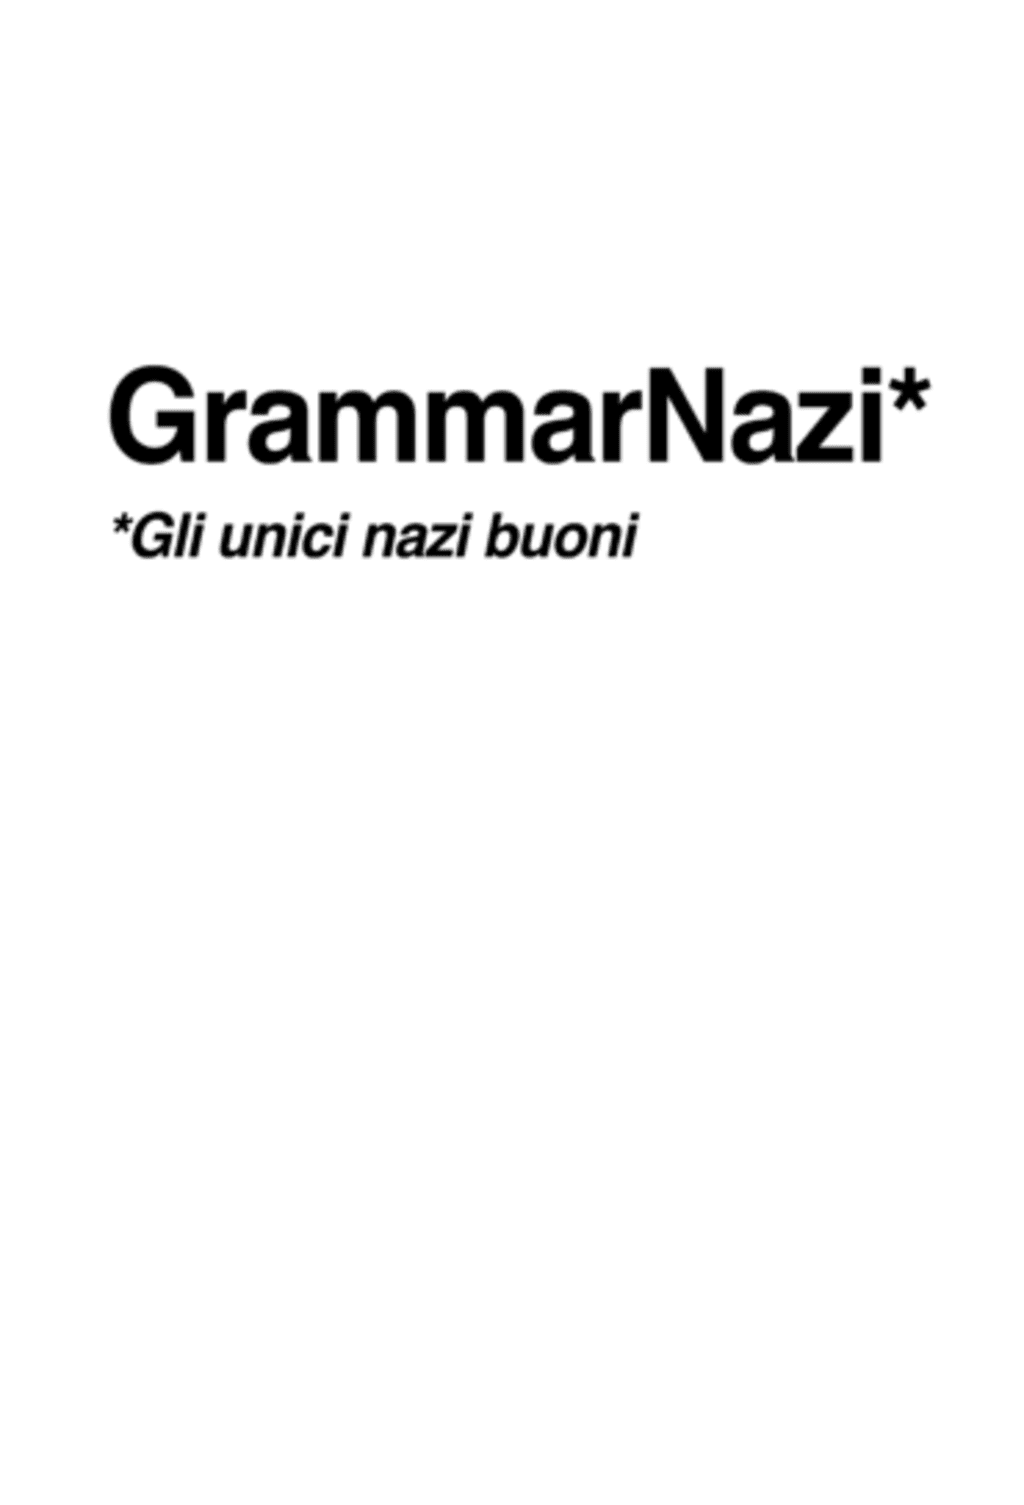 Grammarnazi